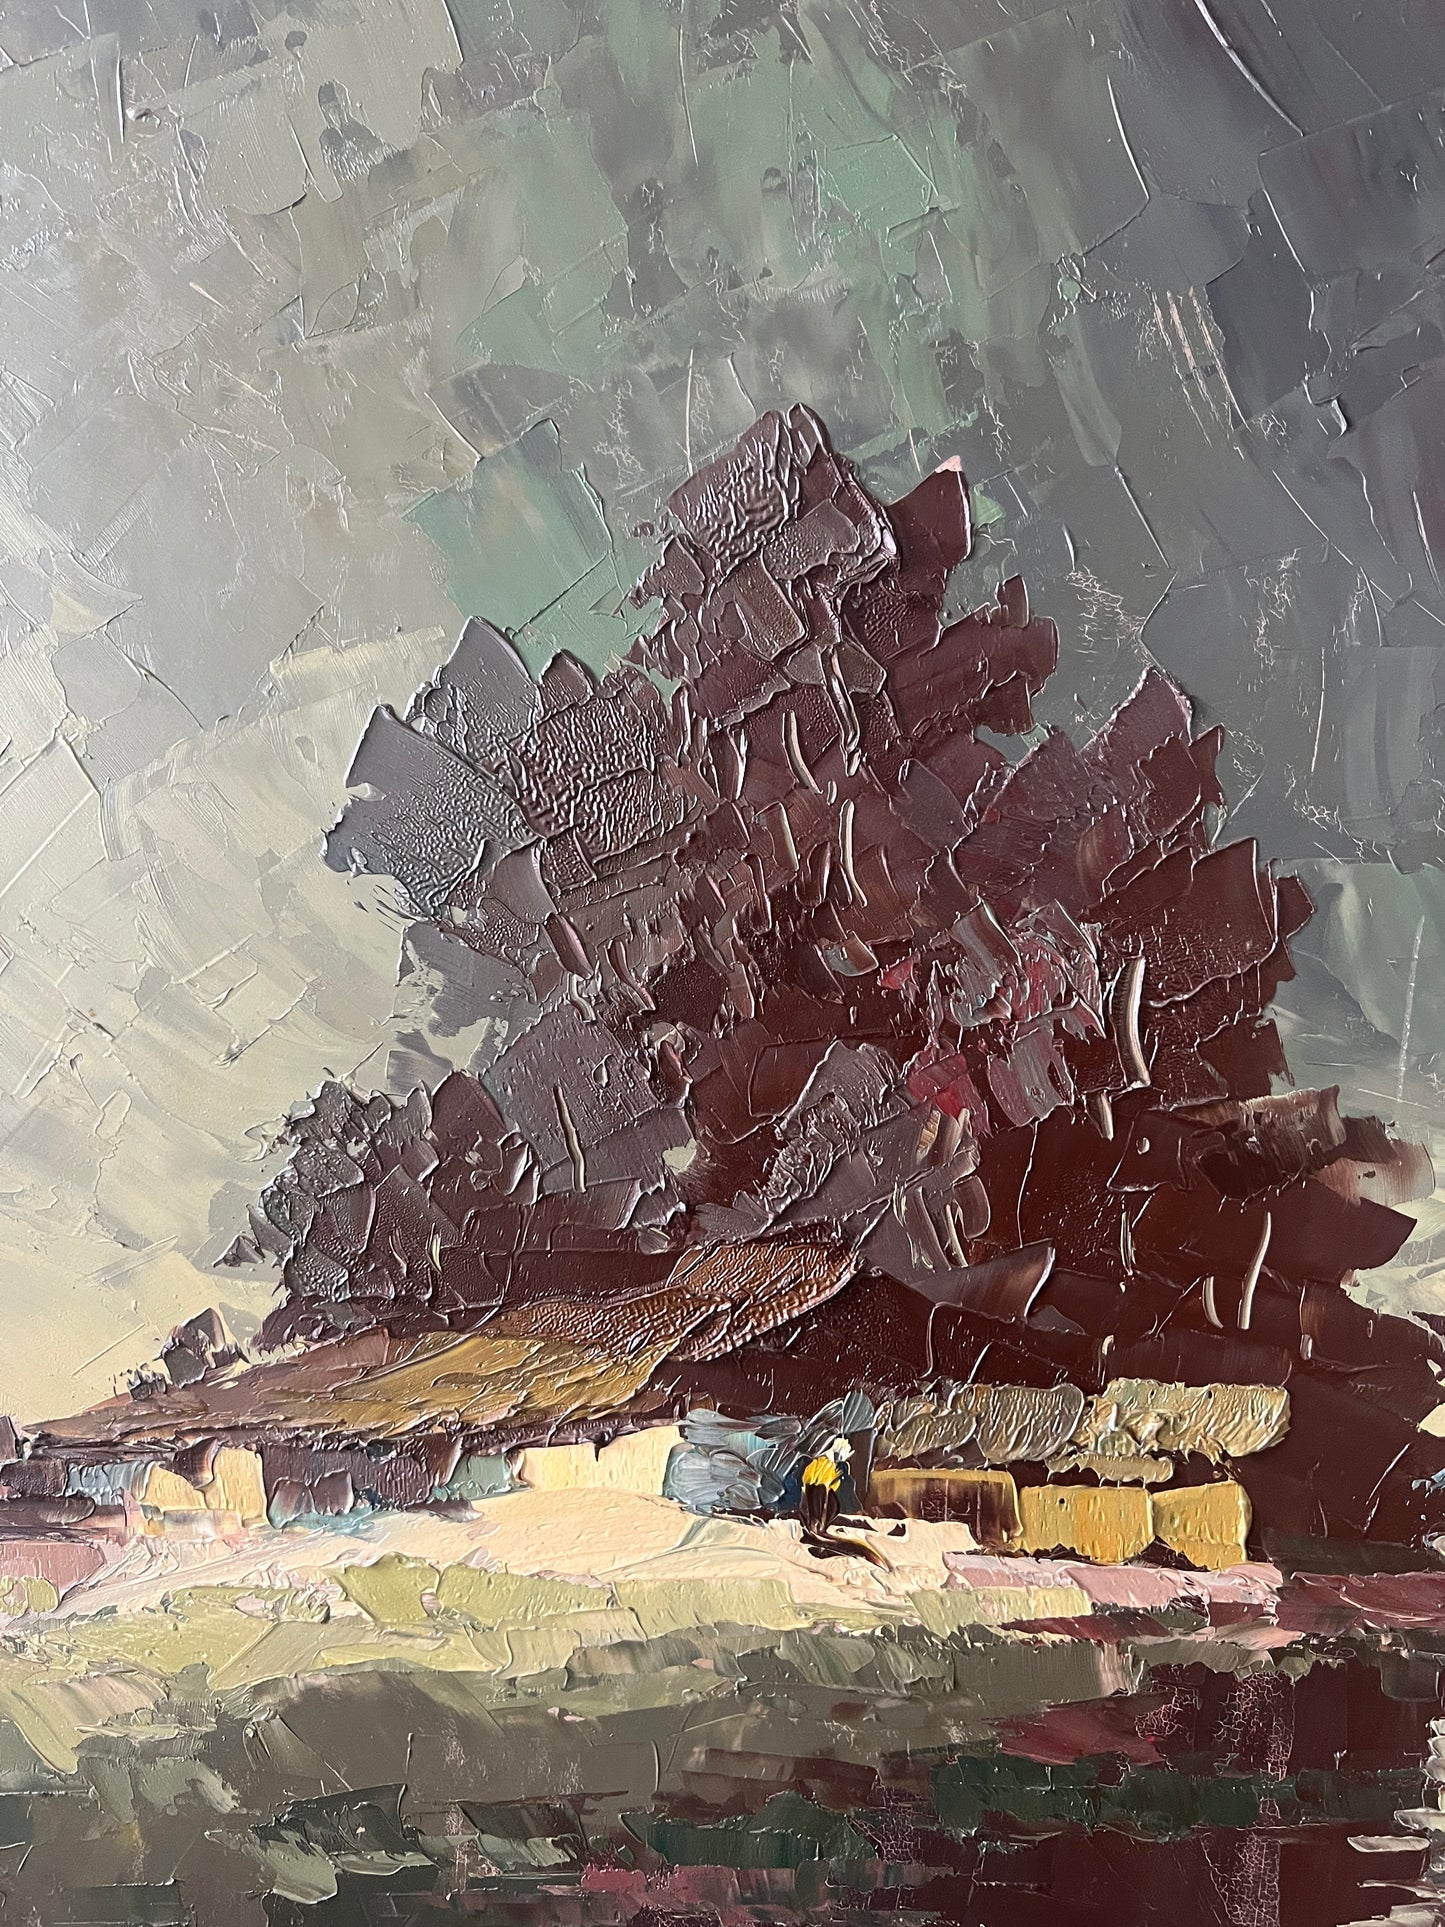 Hein Hoppmann (1901-1982) Ölgemälde Landschaft mit Bauernhaus 83x93